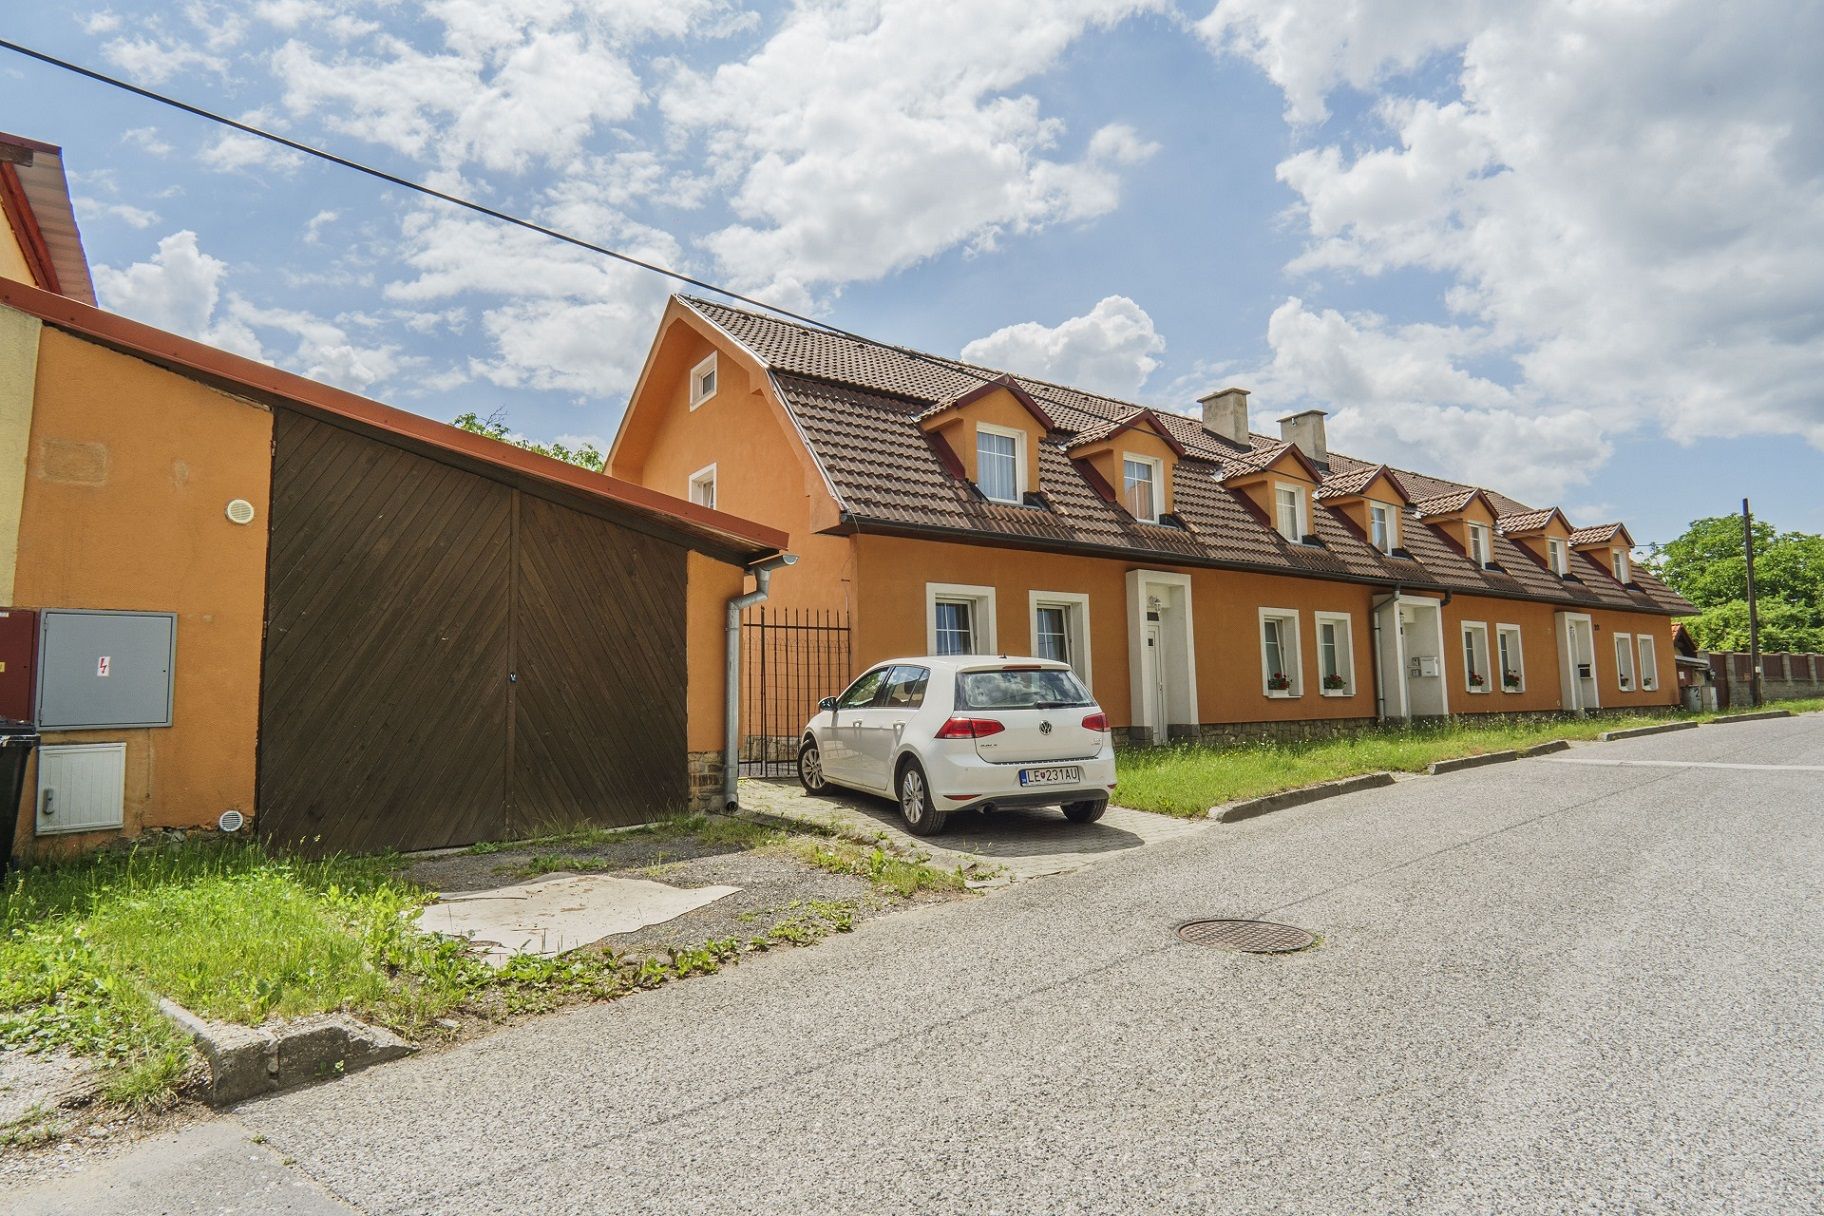 NA PRENÁJOM: Nebytové zrenovované kancelárske priestory, Bottova ulica, Levoča